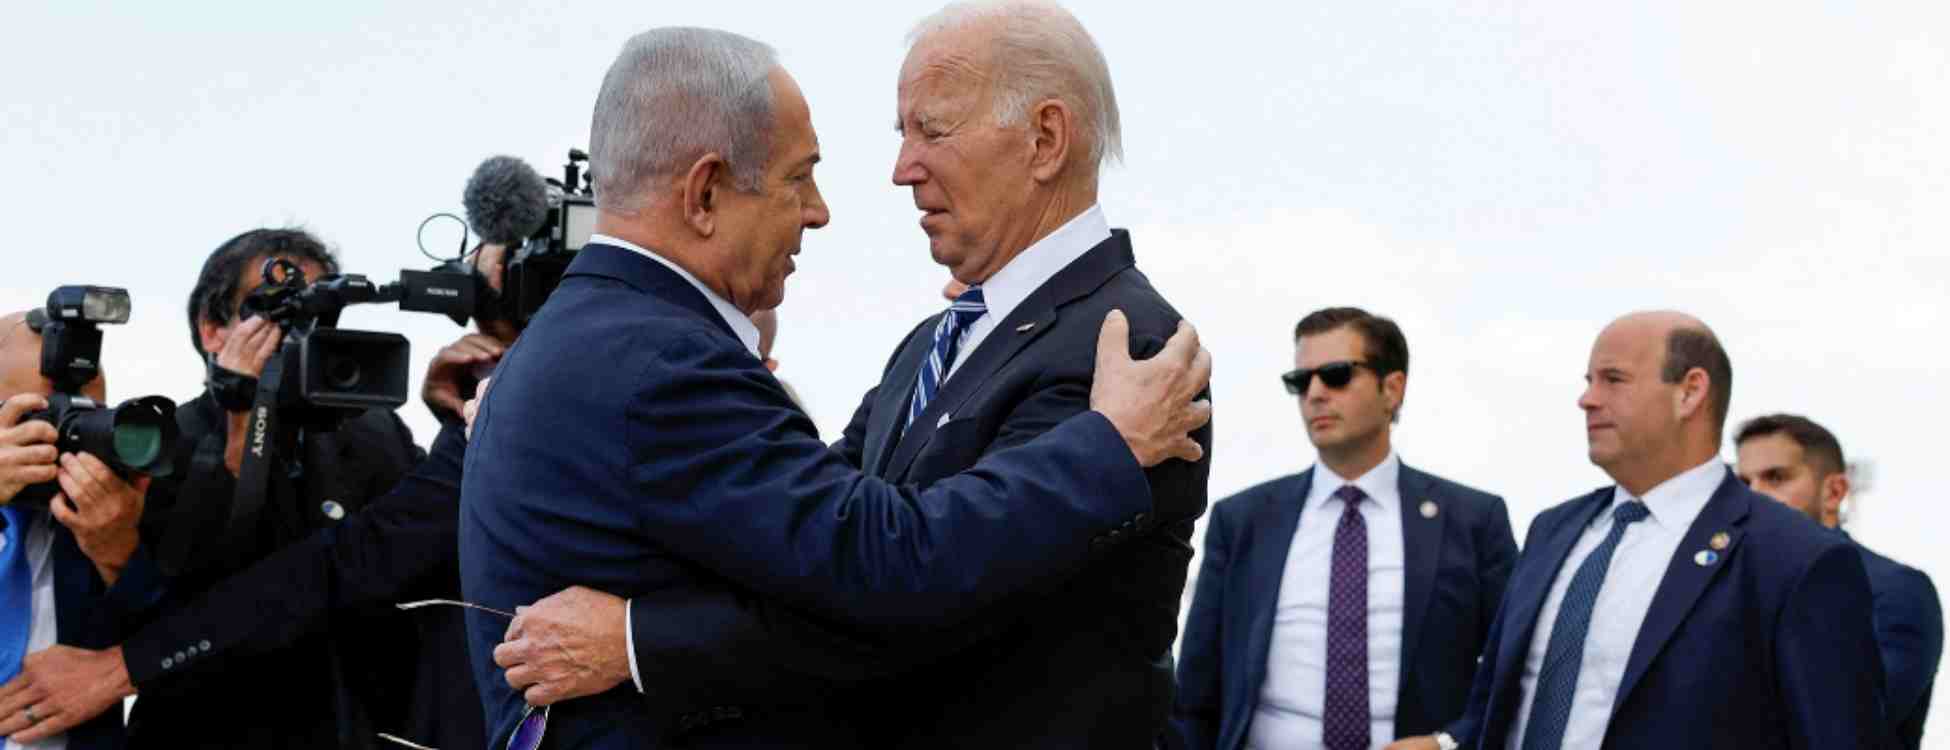 Biden Israilde Netanyahu ile birbirlerine sarildilar